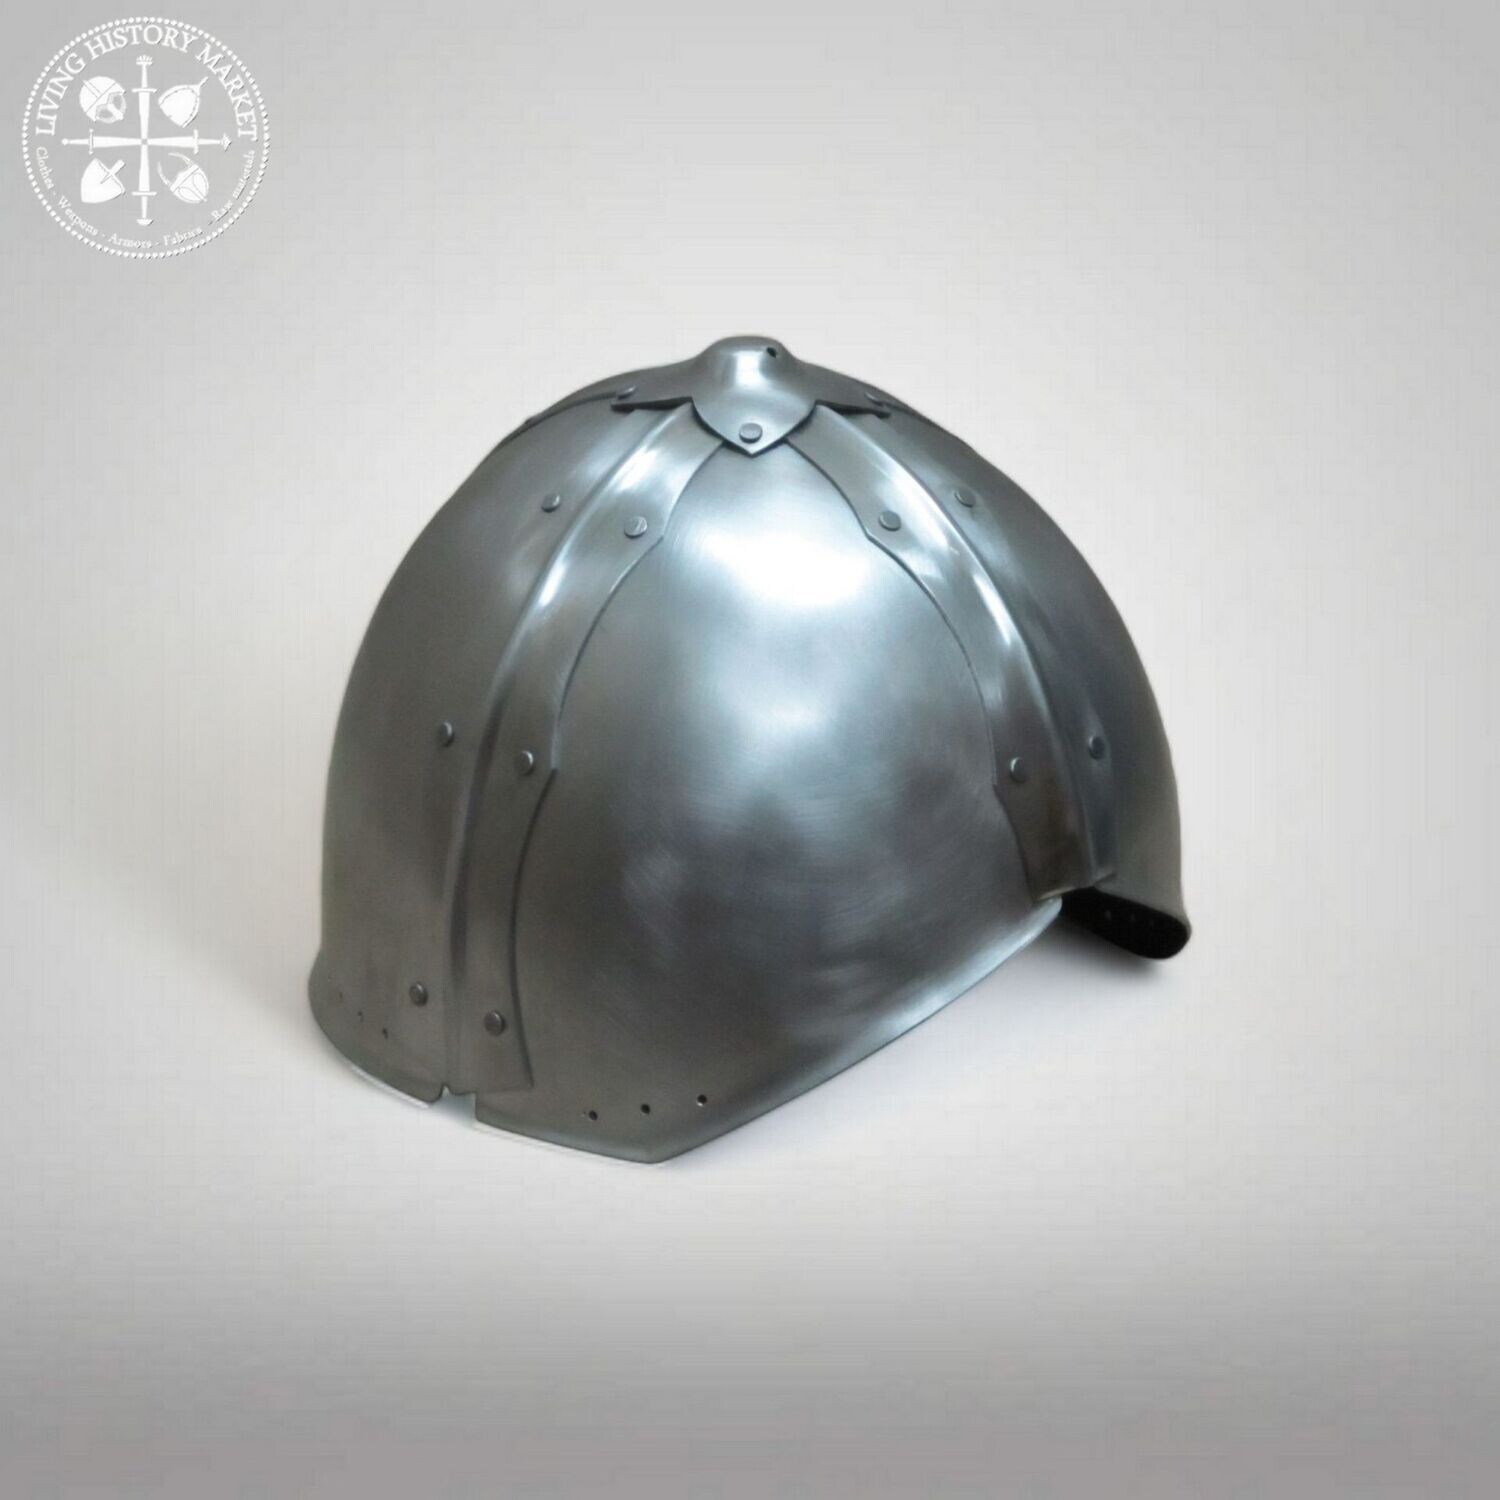 Verden Van der Alle helmet - 8-10th century